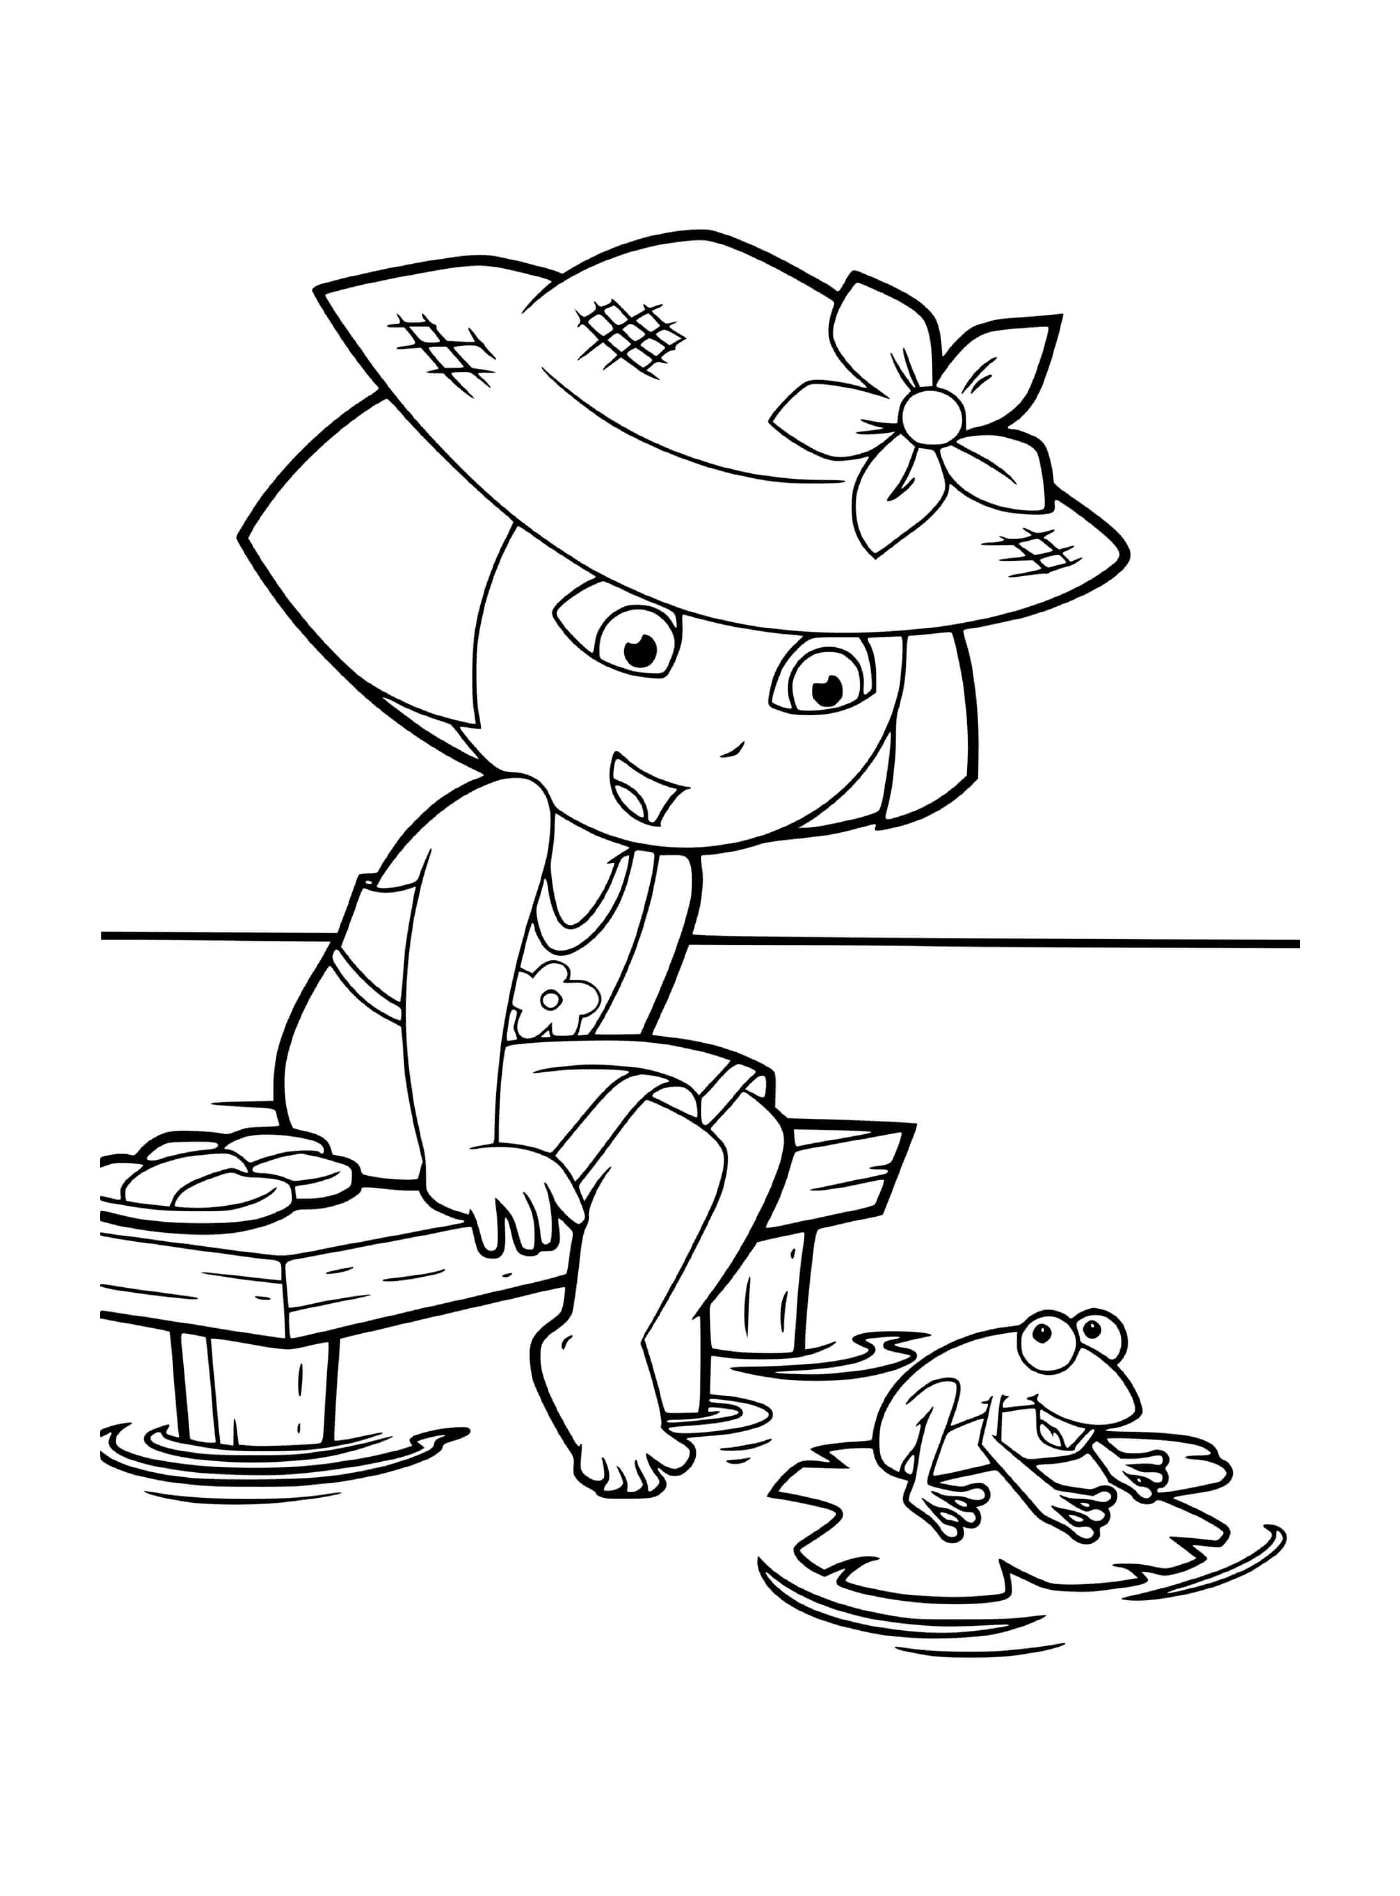   Dora fait du camping près du lac avec une grenouille 